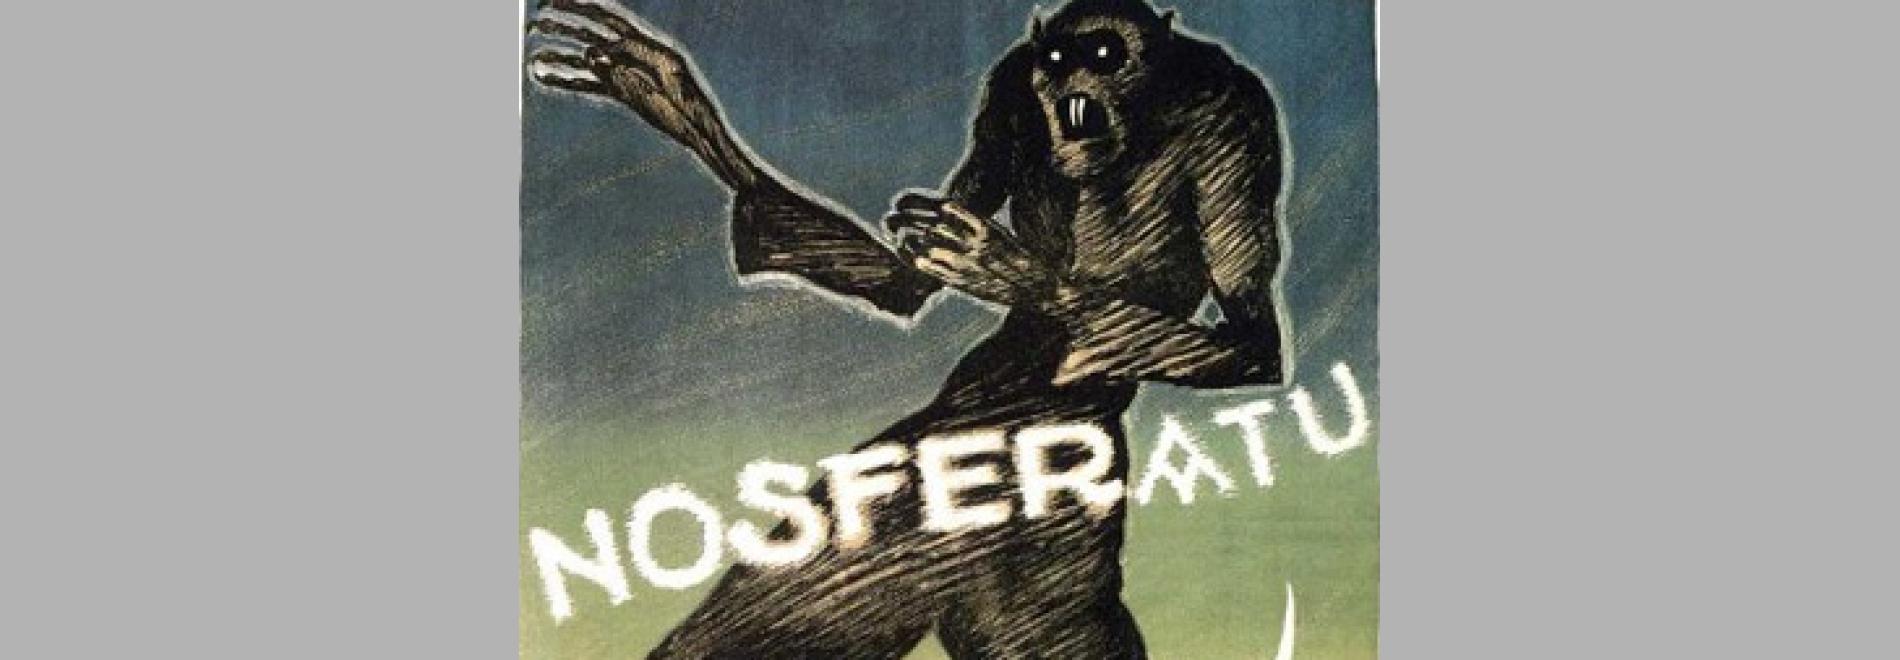 Nosferatu (F.W.Murnau, 1921)